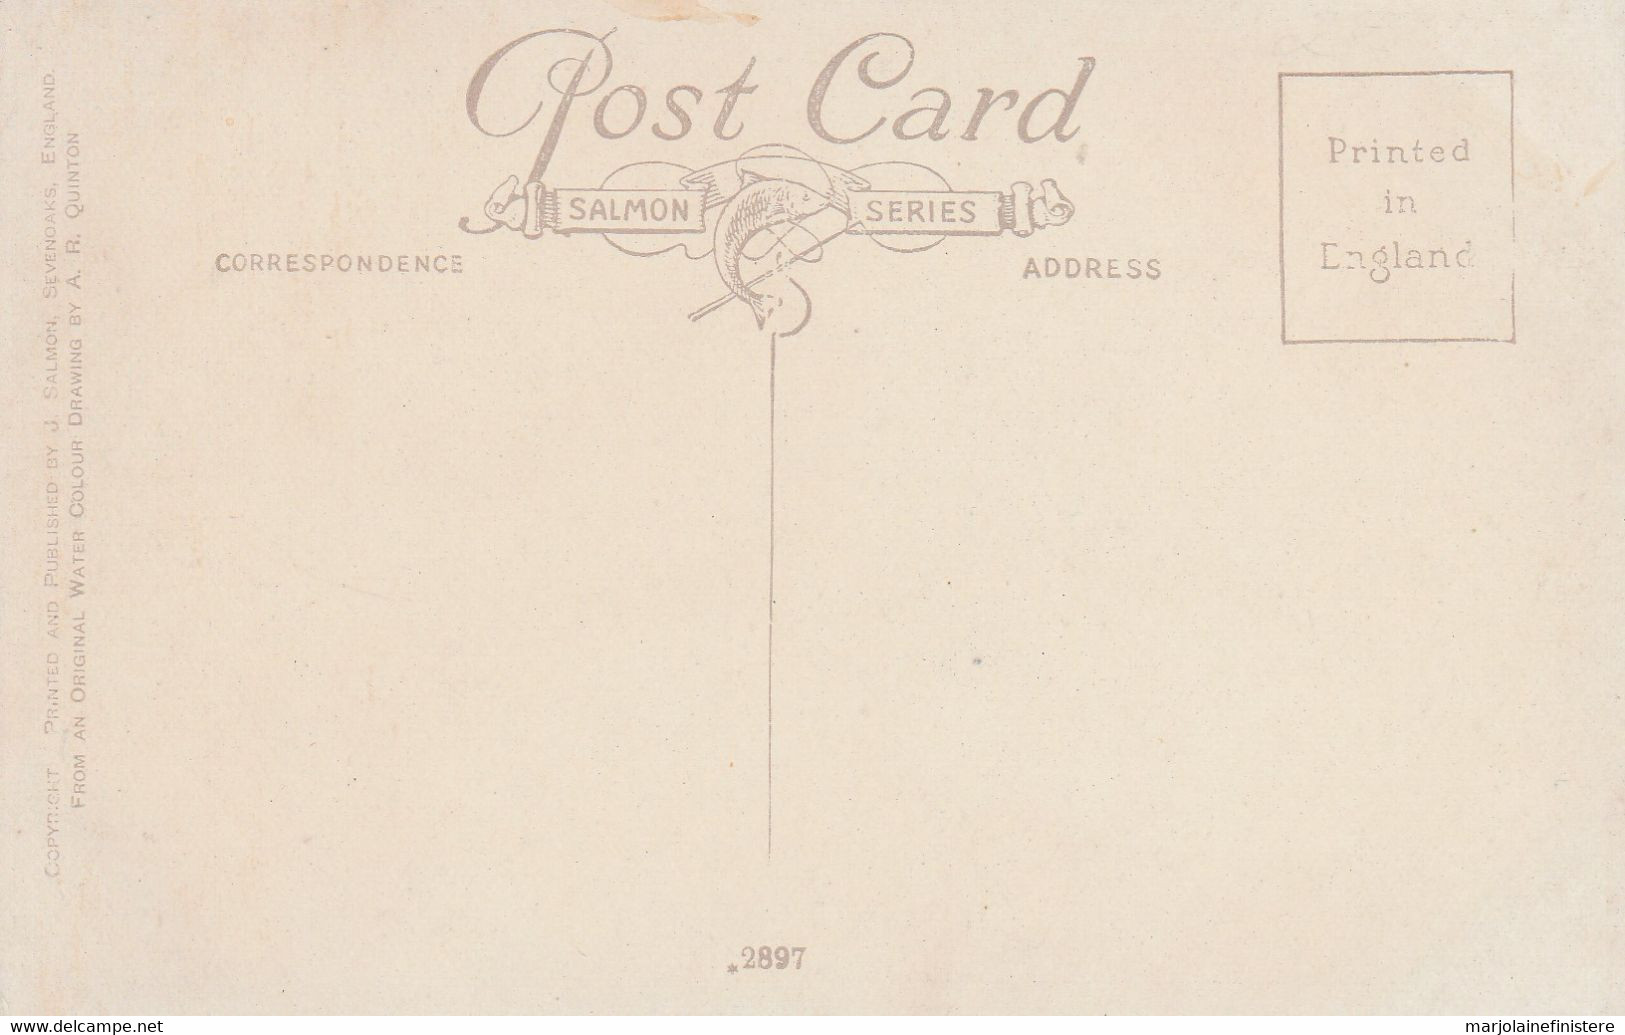 THORPE VILLAGE, NORWICH. Post Card. Salmon Series. N° 2897. AR. QUINTON.  SUP. - Quinton, AR